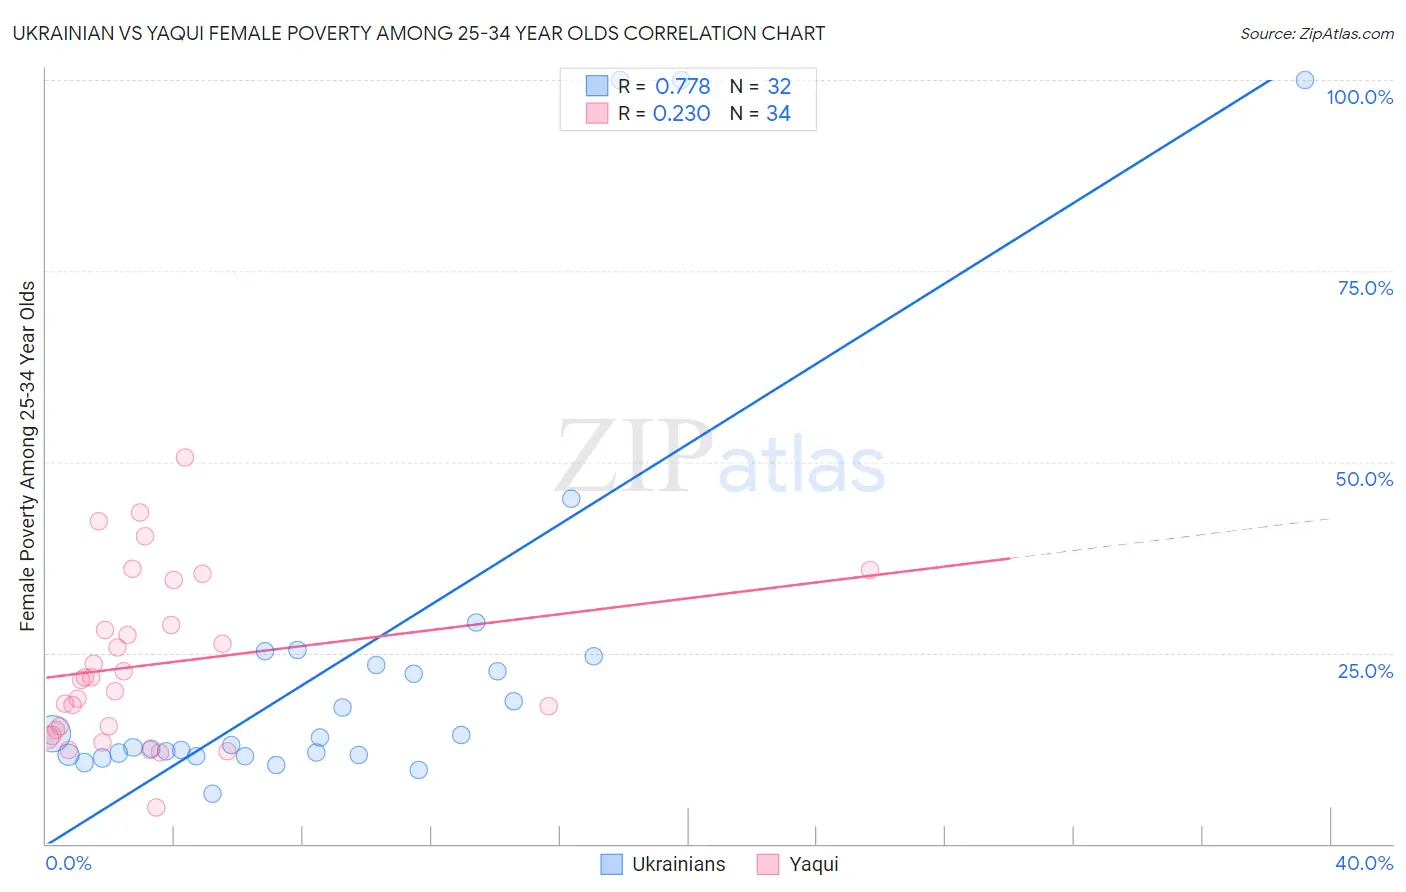 Ukrainian vs Yaqui Female Poverty Among 25-34 Year Olds